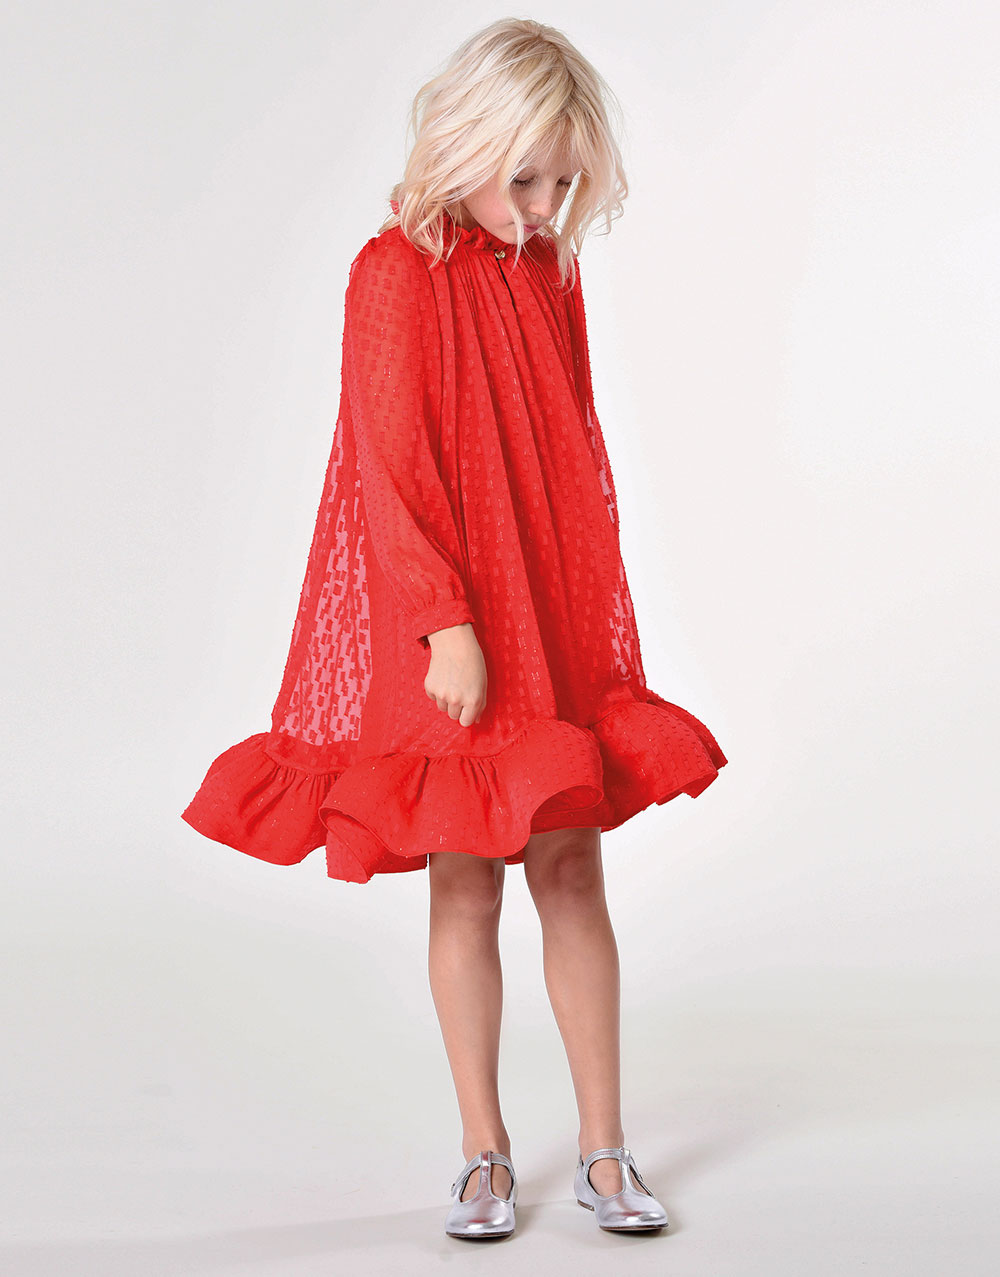 rode formele jurk, luxe merk lanvin voor kind meisje